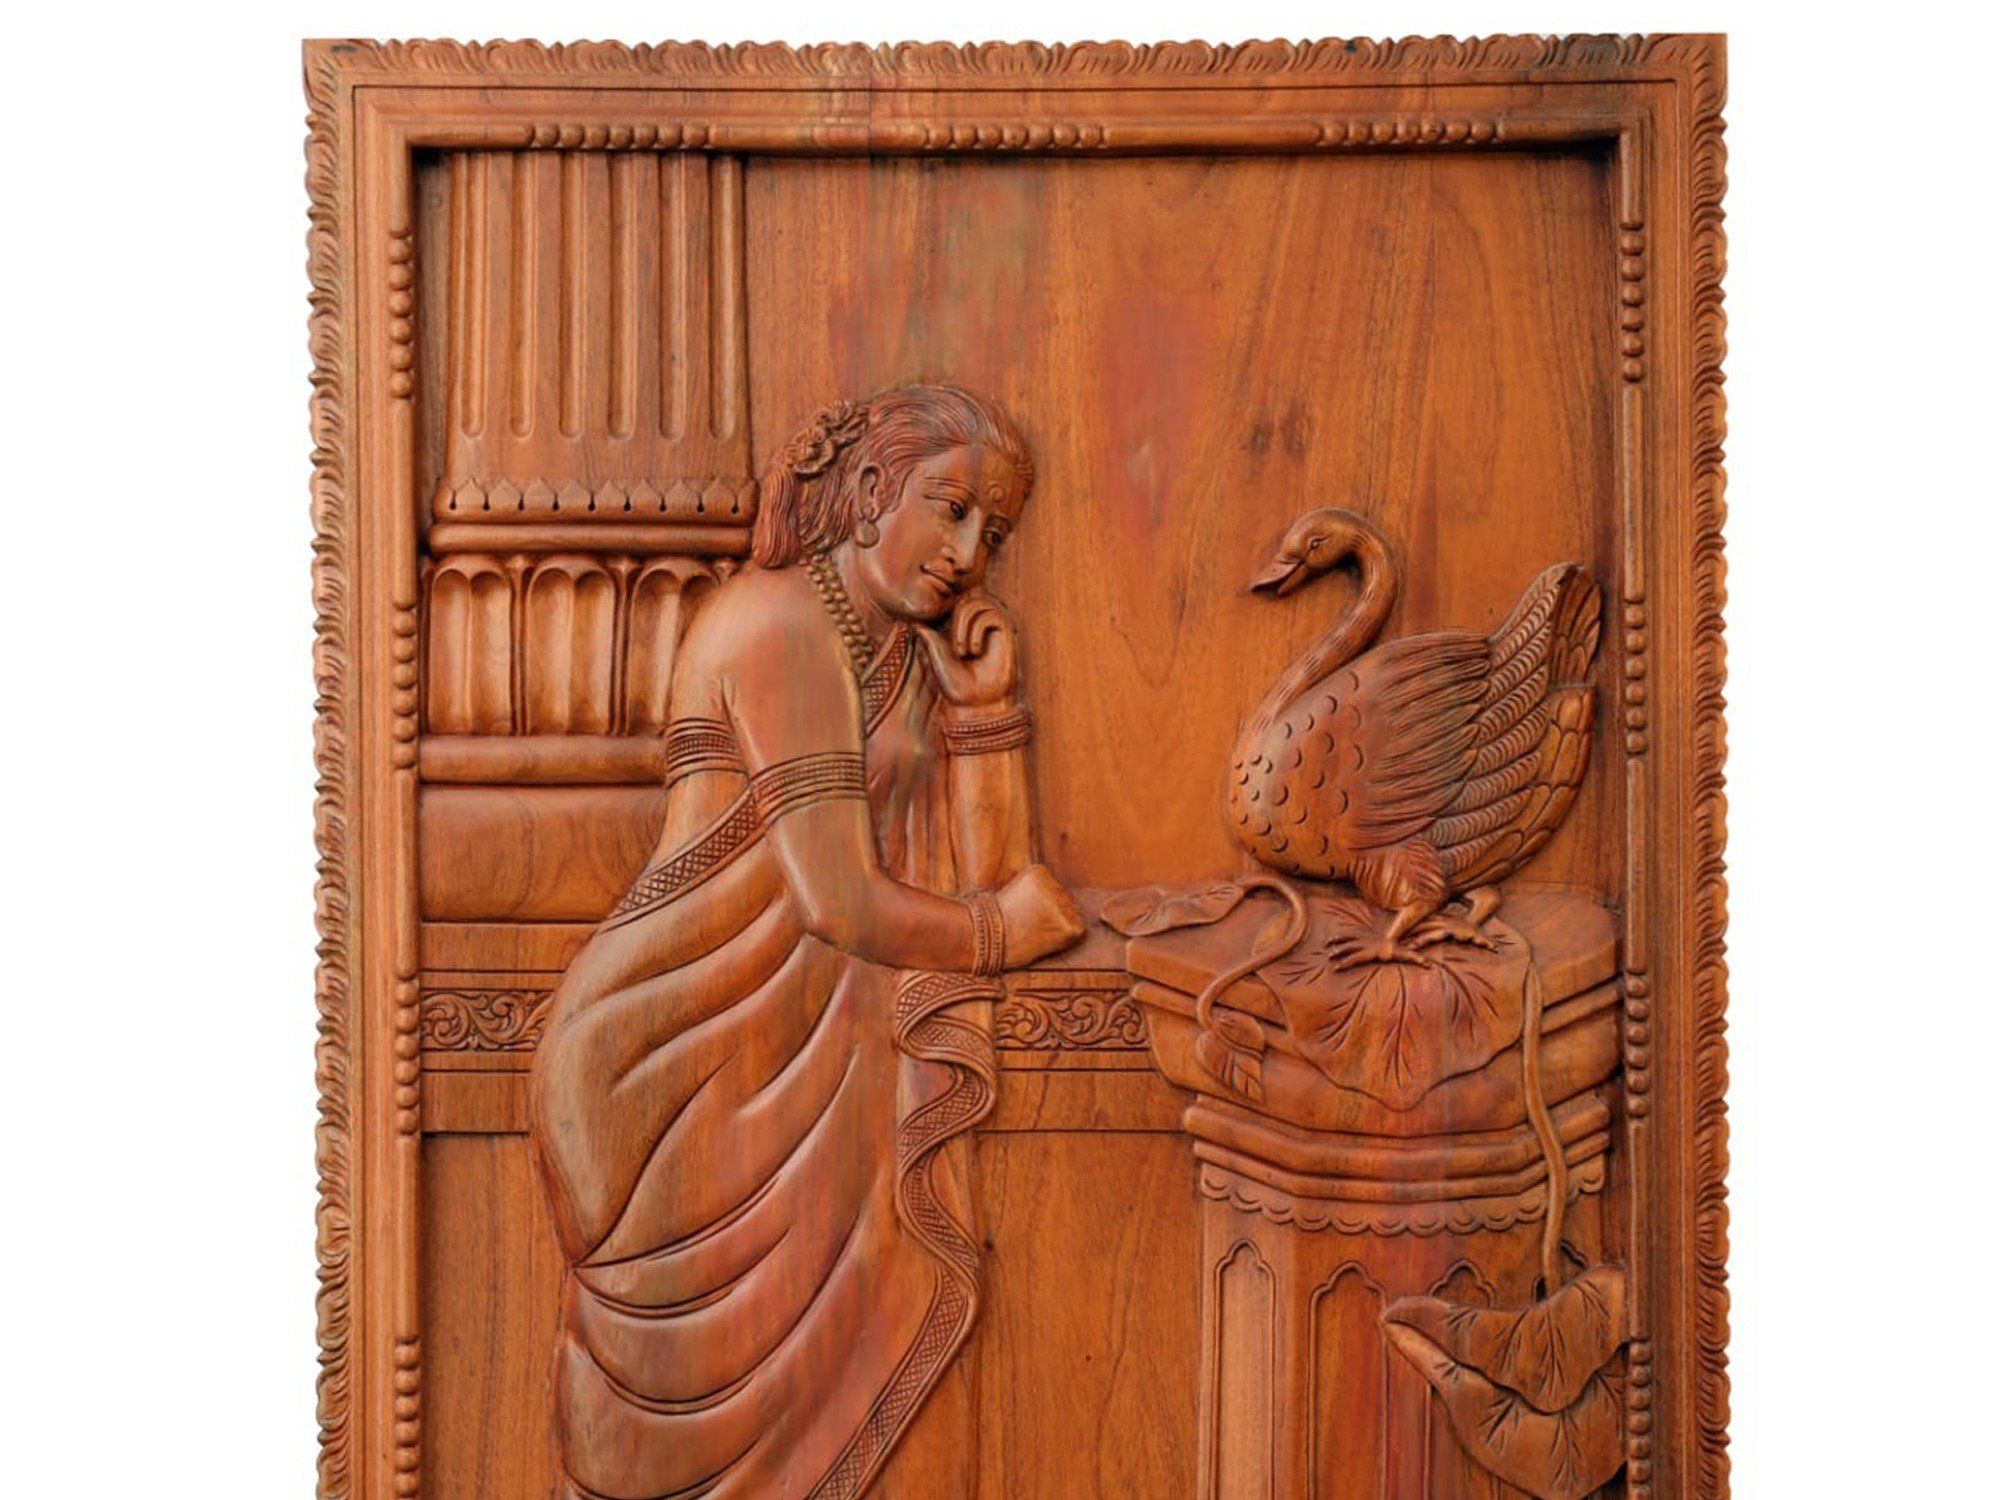 Hãy đến với tác phẩm điêu khắc gỗ của Wooden Damayanti, nơi tinh hoa của nghệ thuật điêu khắc gỗ được thể hiện rõ nét. Được khắc hoạt và tỉ mỉ từng chi tiết, các tác phẩm sẽ khiến bạn trầm trồ về độ tài hoa của nghệ nhân.